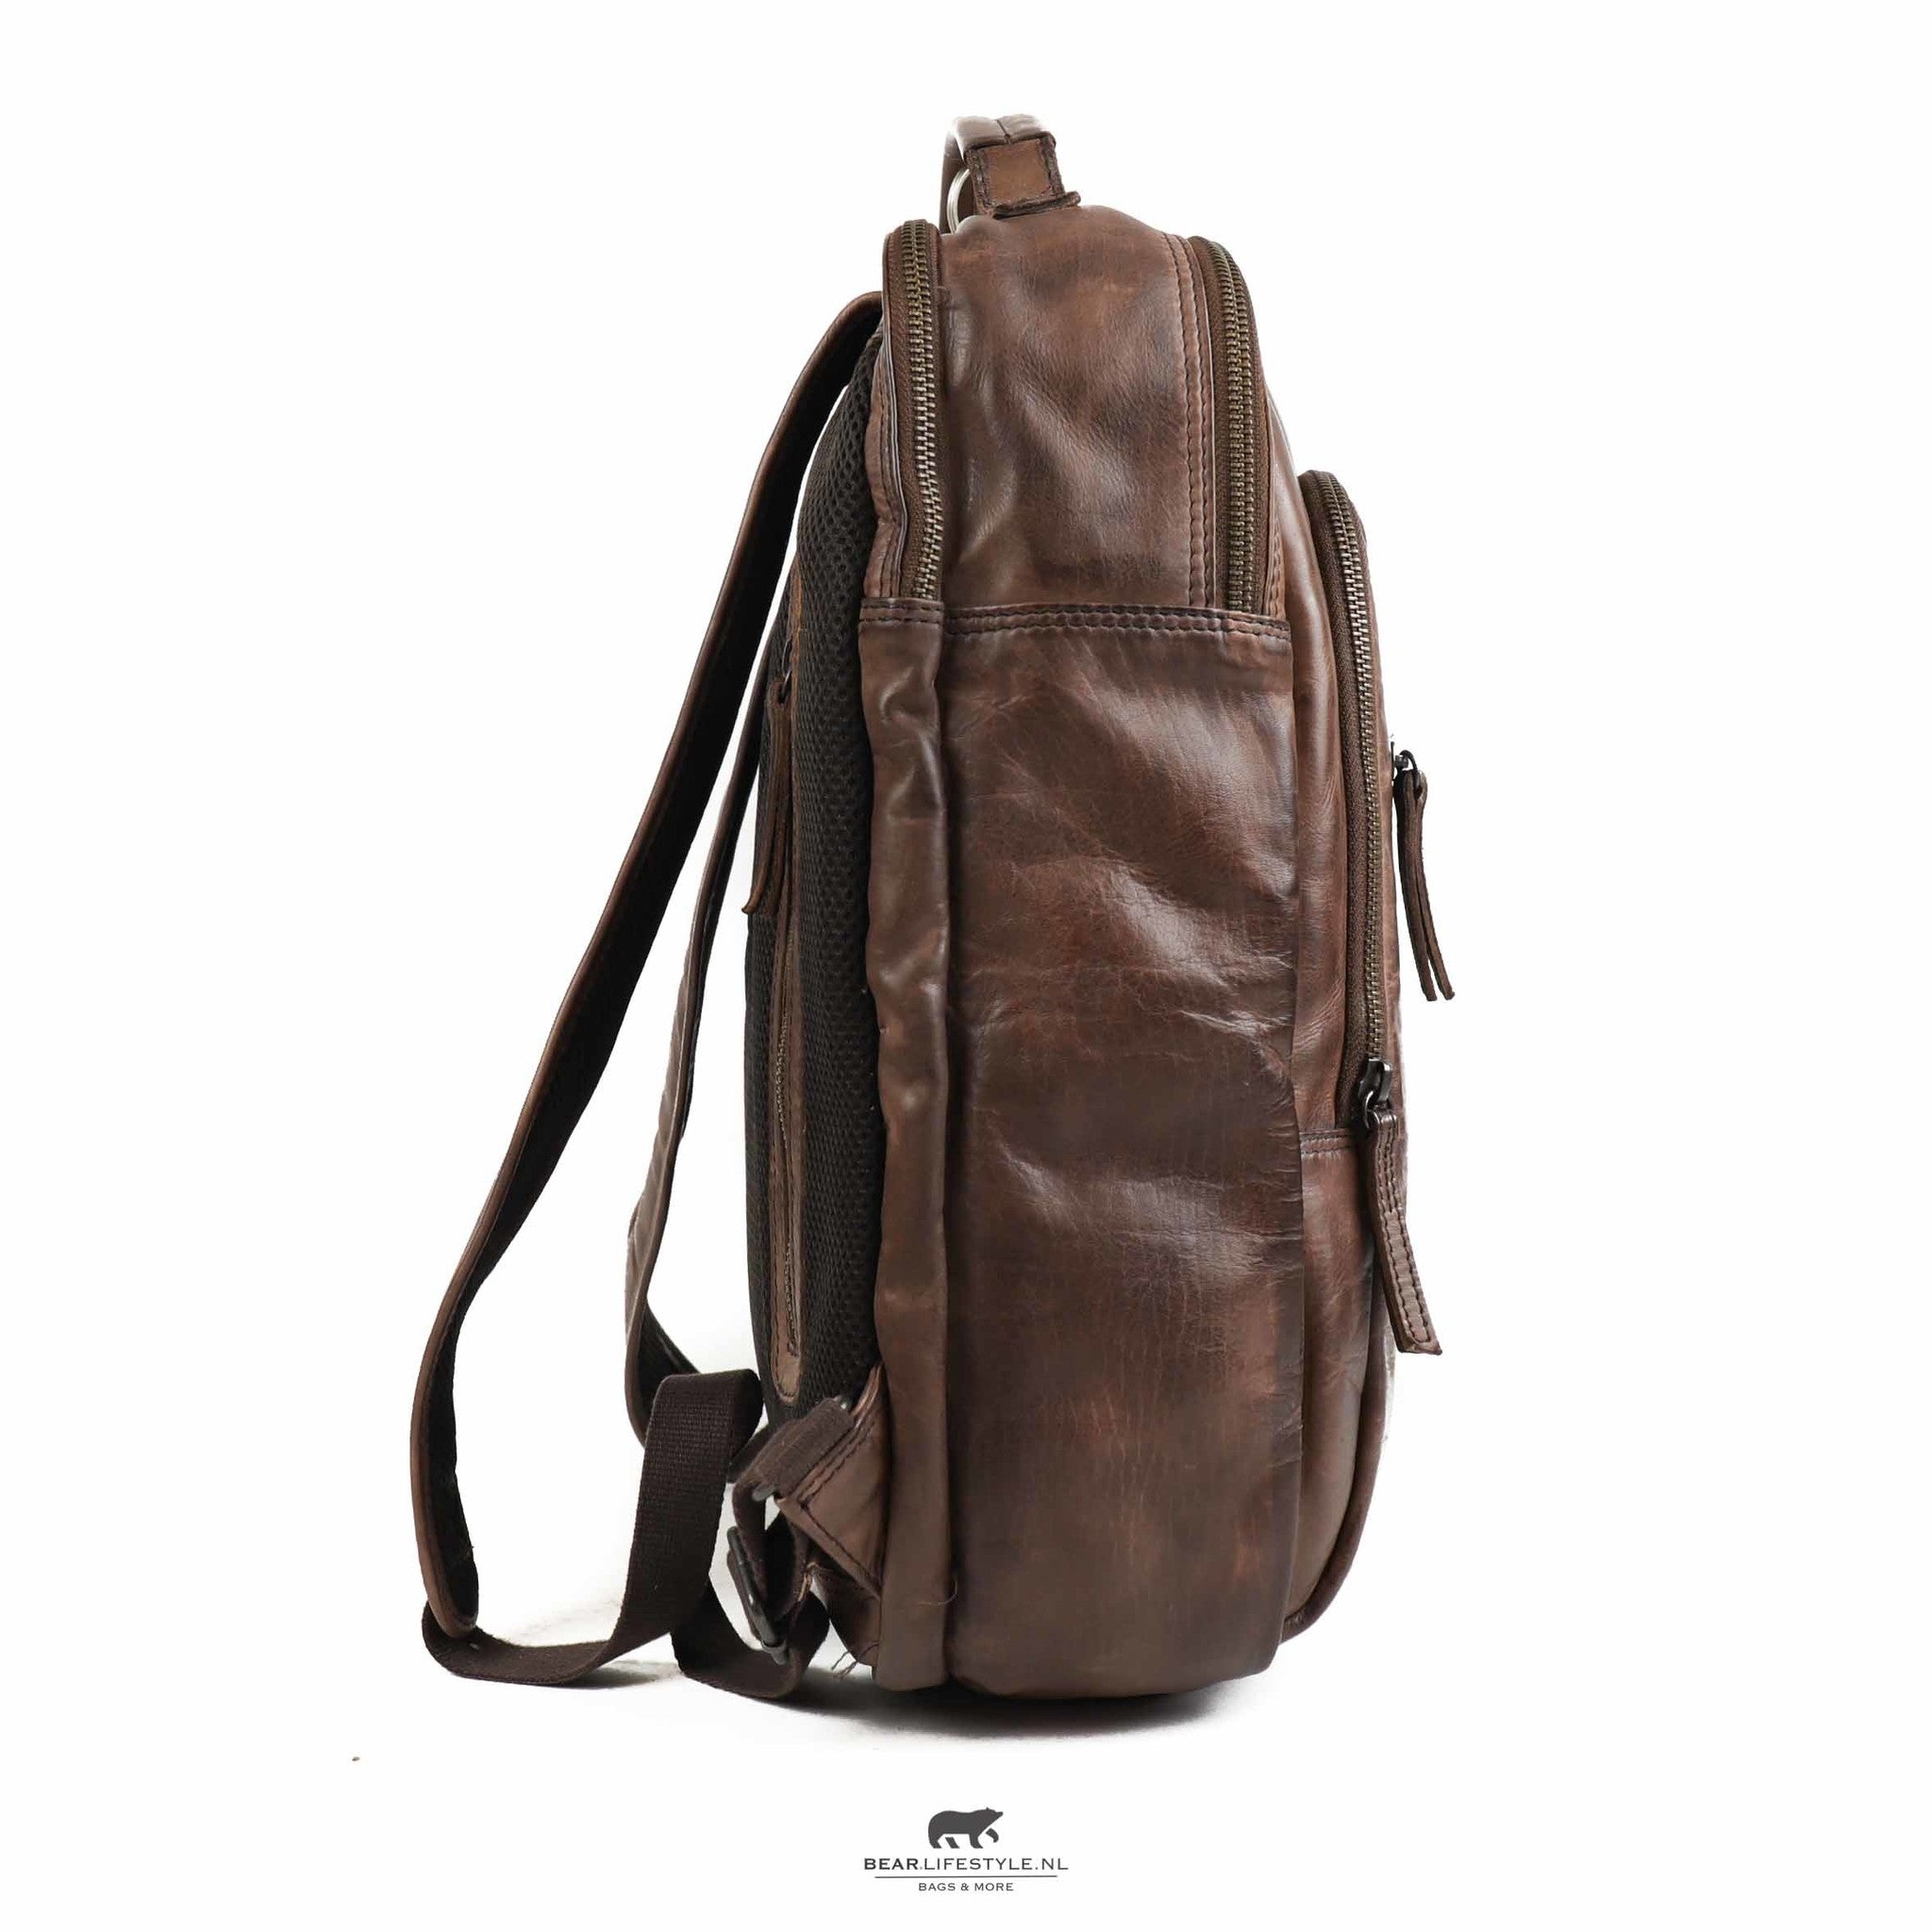 Backpack 'Ties' dark brown - CL 40848